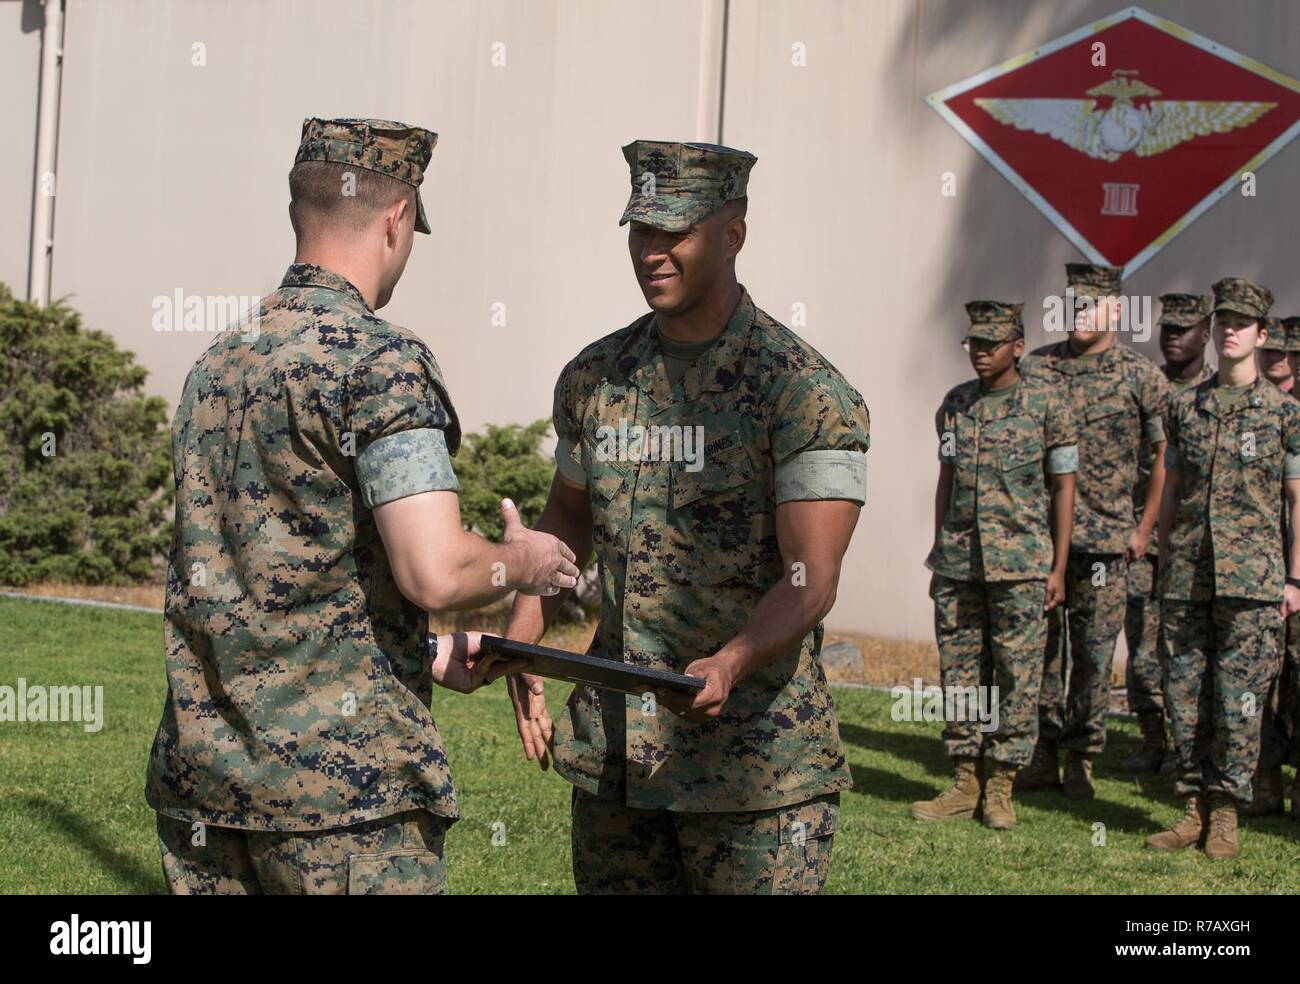 Us Marine Corps Master Sgt. Anthony Mendoza, Terrorismusbekämpfung und Schutz chief für 3. Marine Flugzeugflügel (3 dMAW), G-3-Vorgänge, die von den 1st Lieutenant Daniel Kent, G-3-Operationen Anti-terror-Offizier, der während seiner Promotion zum Master Sergeant Zeremonie am 3 dMAW Hauptquartier, Marine Corps Air Station Miramar San Diego, Calif., 10. April 2017 congratualted. Mendoza ist mitsoldaten dMAW 3 zugeordnet, G-3-Operationen, stand in der Ausbildung hinter ihm als Teil einer traditionellen Promotion Zeremonie, in der Sie ihm zu seinem Erfolg gratulieren wird - danach. Stockfoto